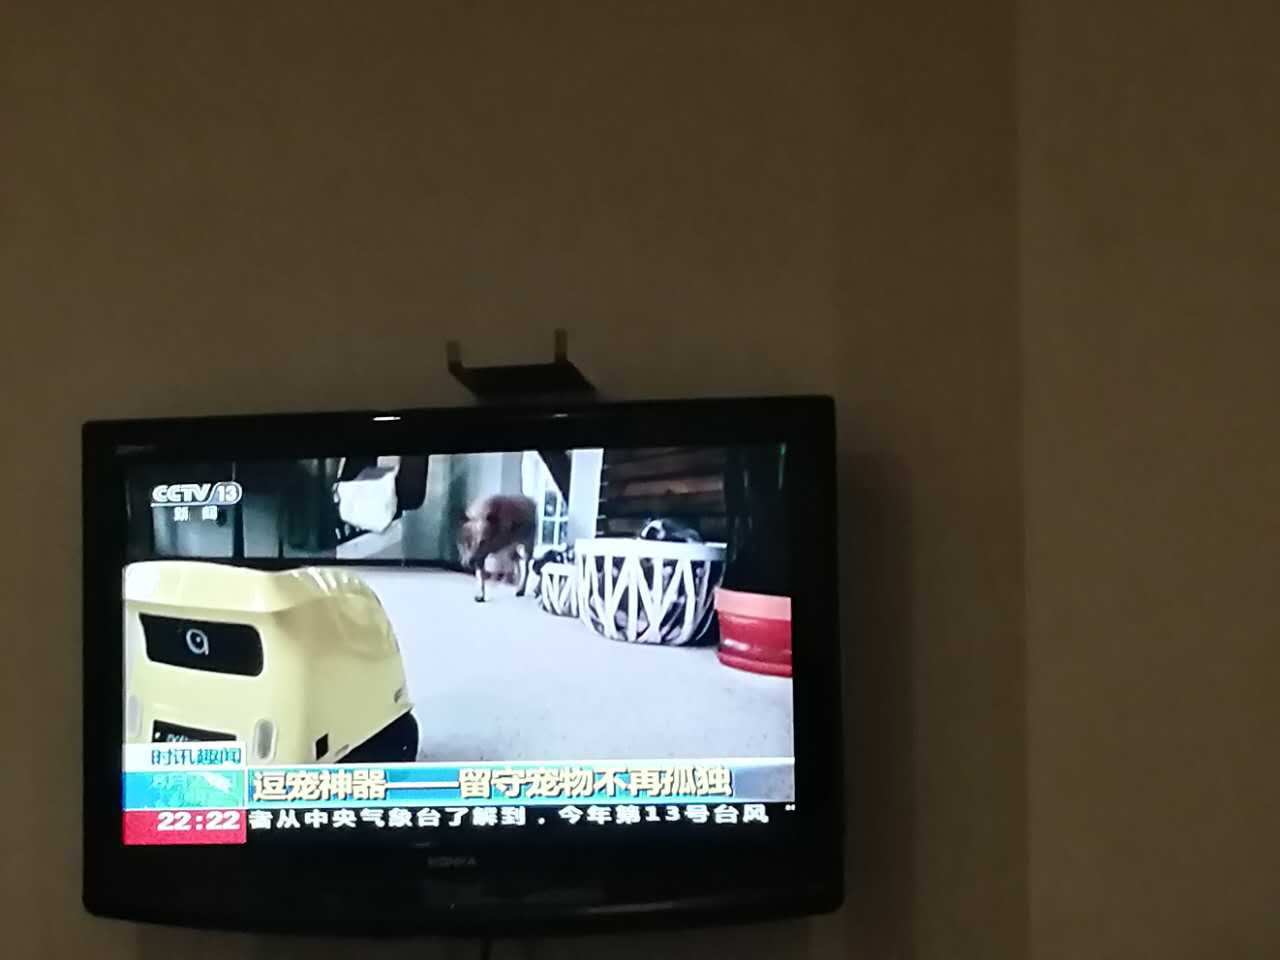 给力，小蚁智家宠物陪伴机器人意外上央视新闻走红！